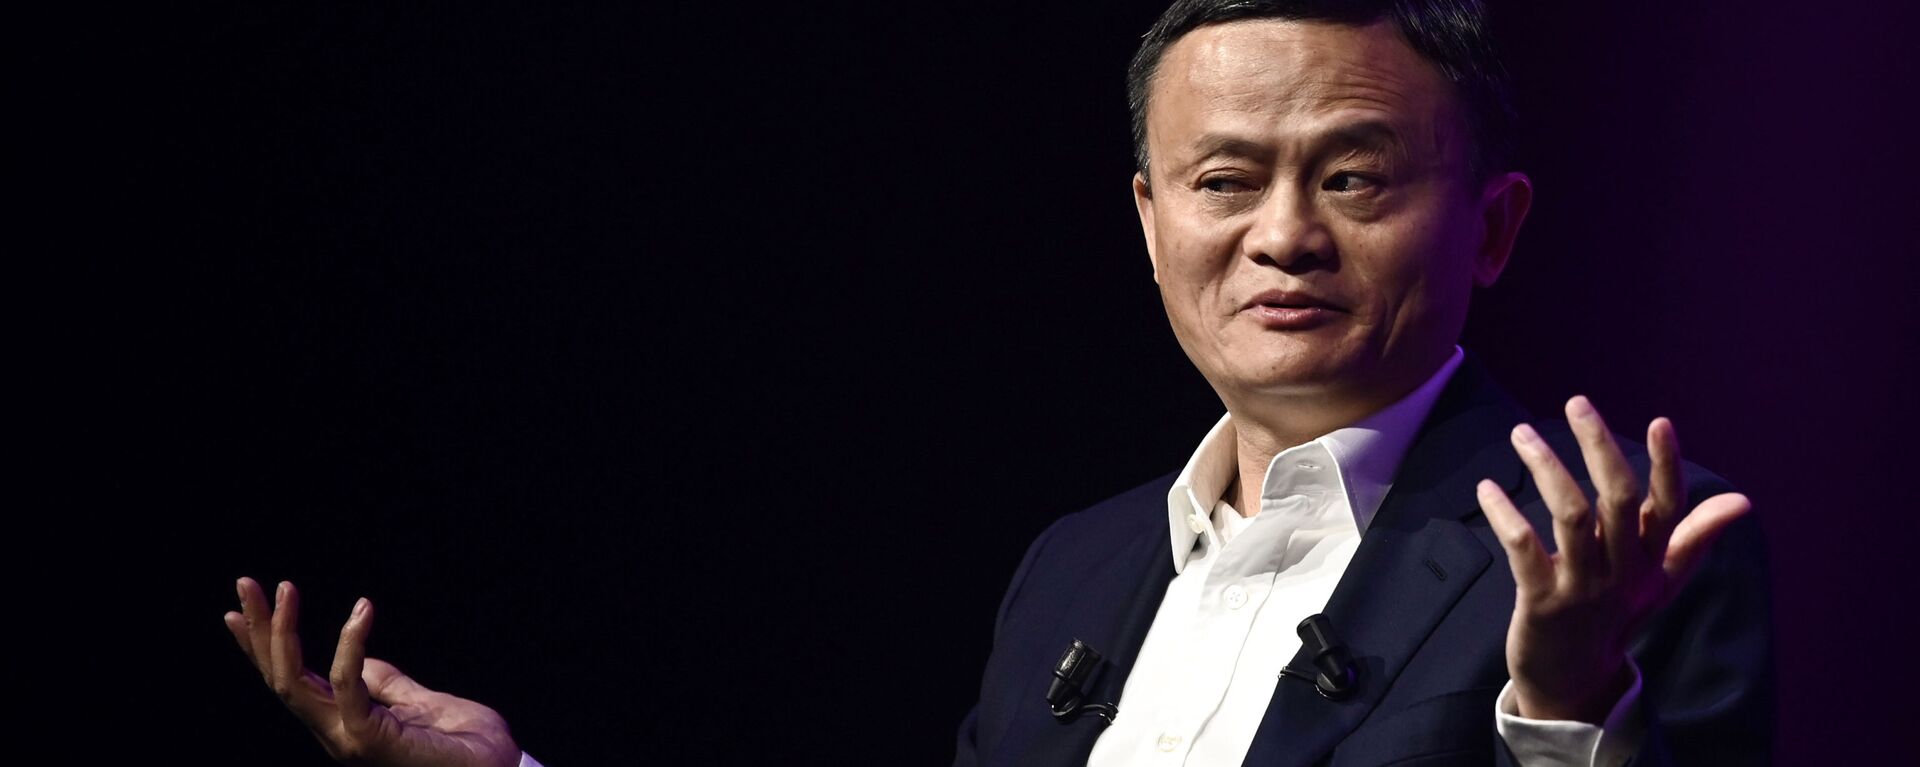 El empresario chino Jack Ma, fundador de Alibaba - Sputnik Mundo, 1920, 20.10.2021